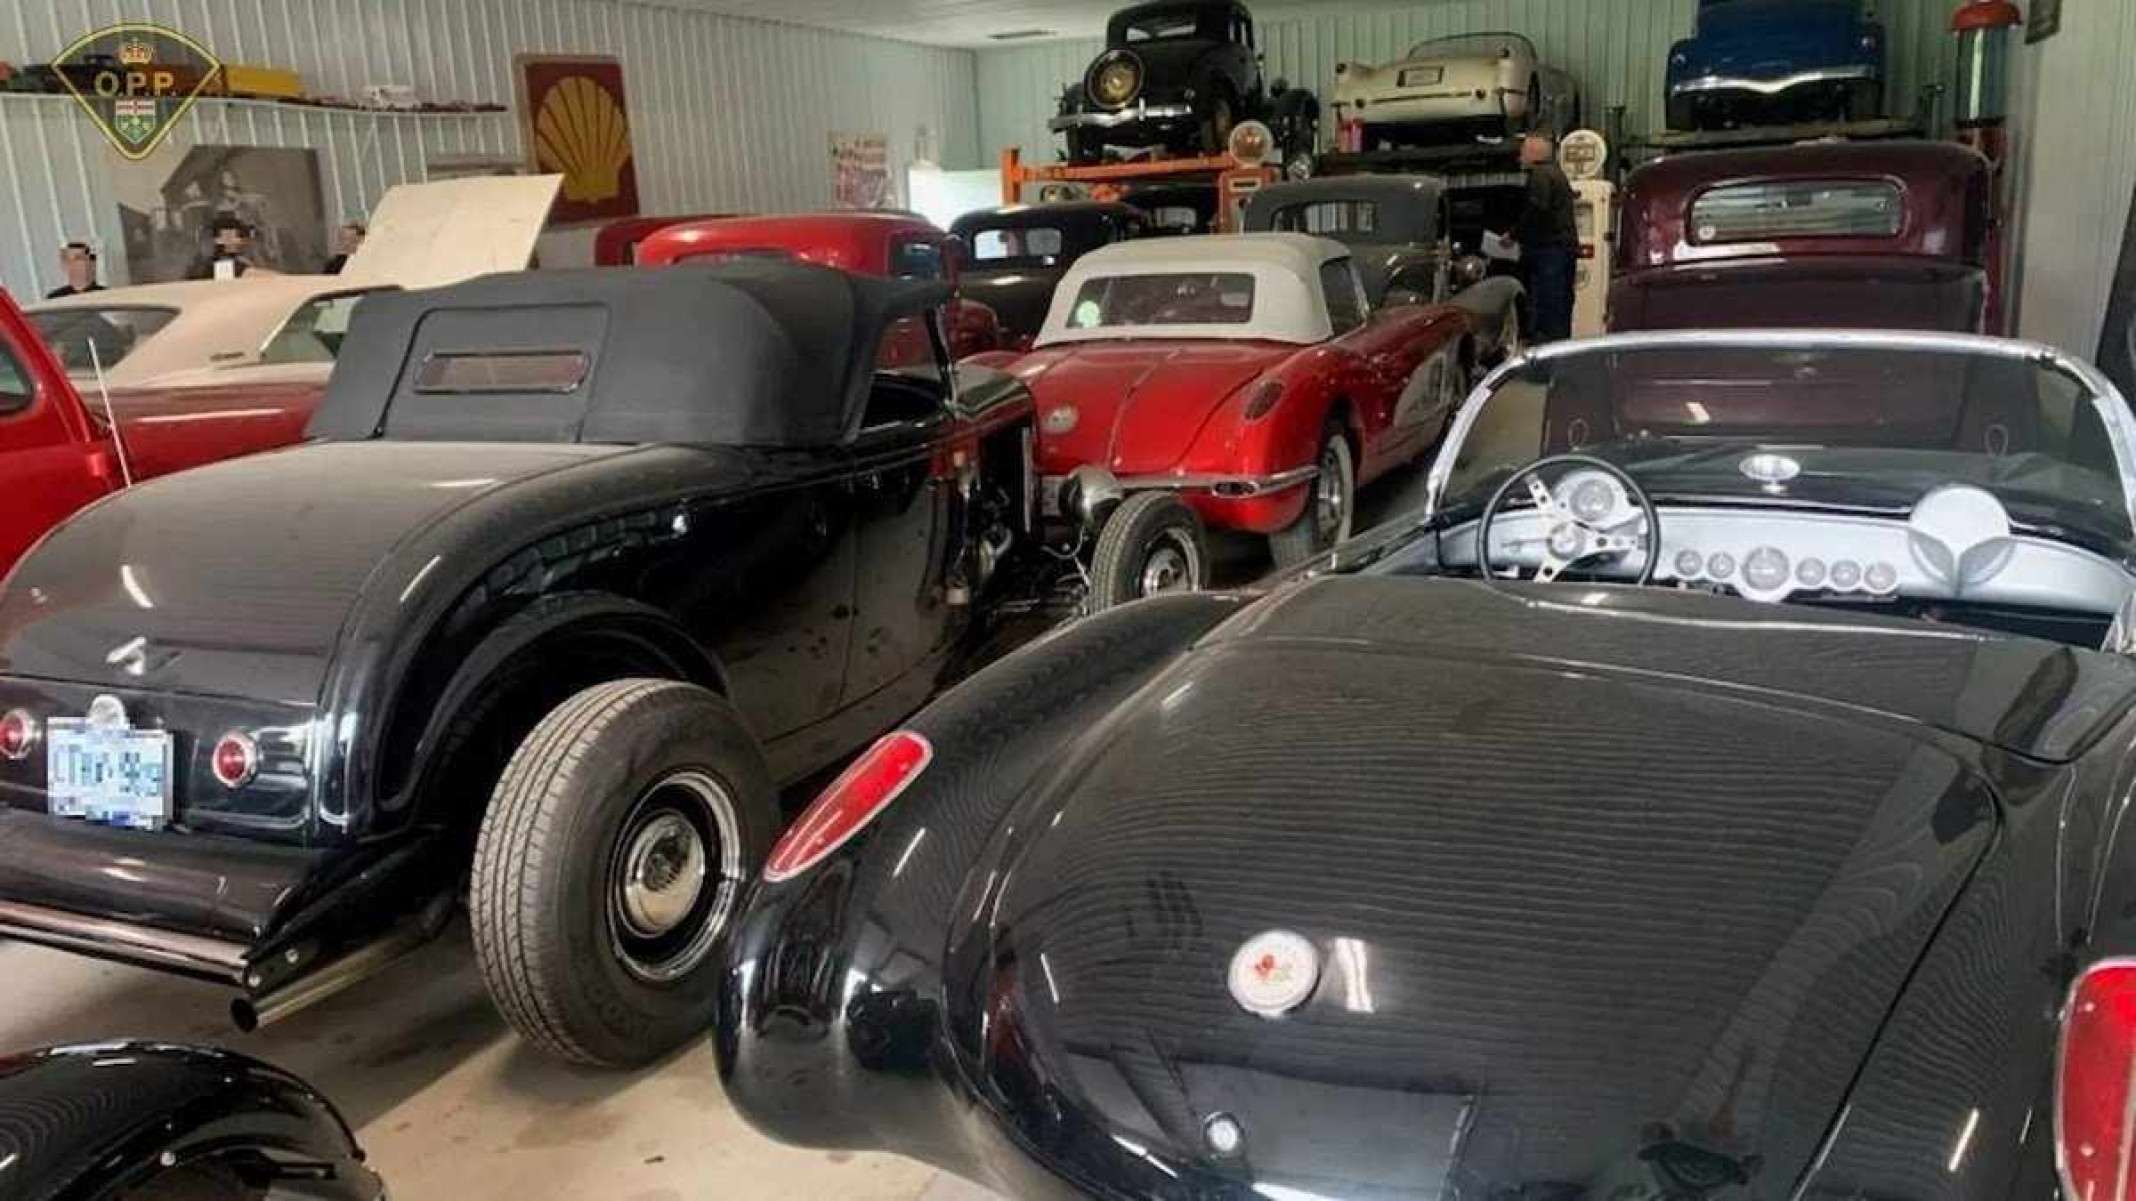 Veículos pretos clássicos dentro de um celeiro.